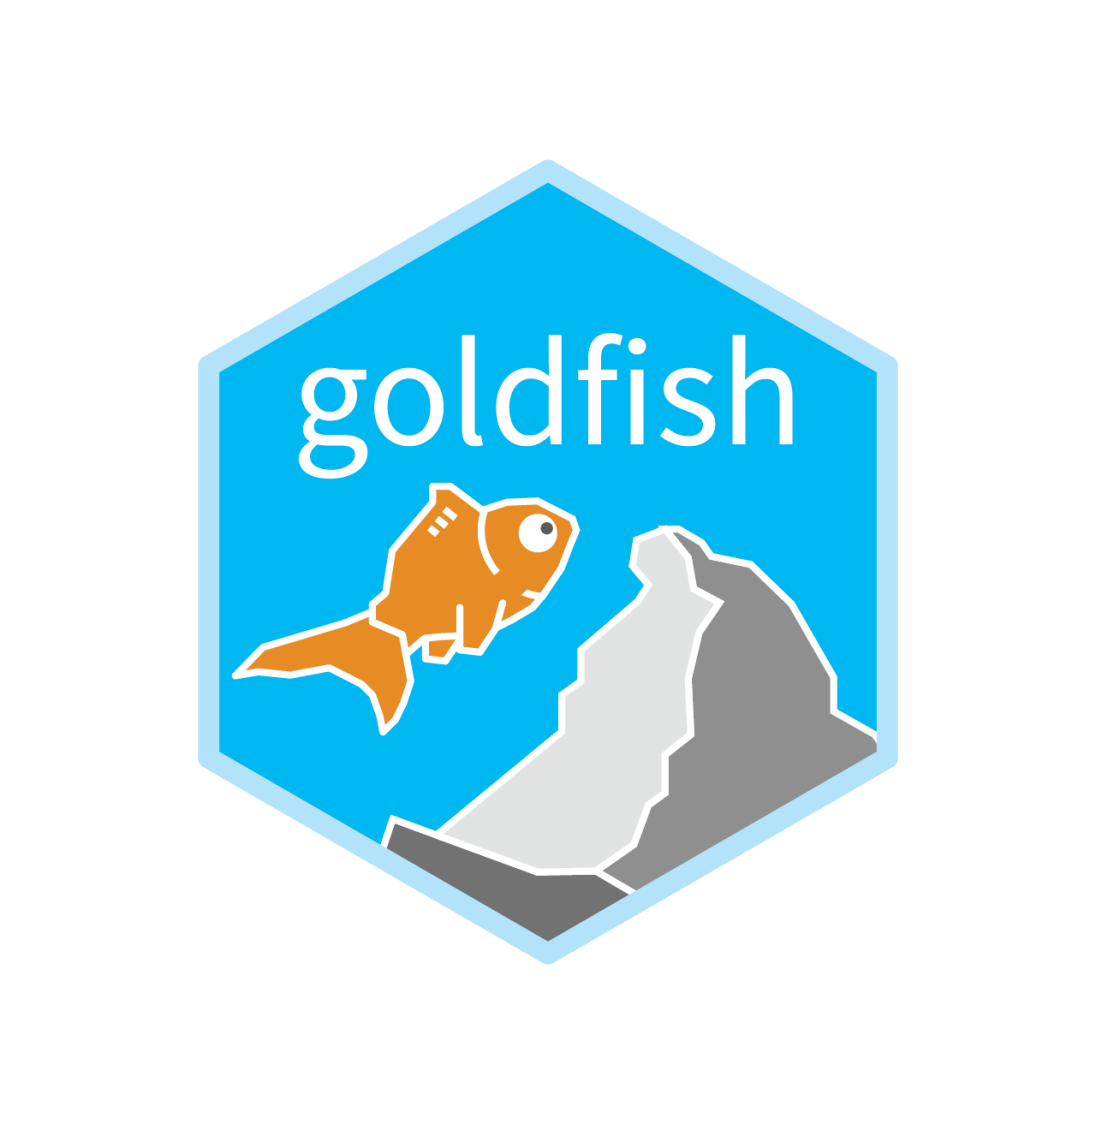 A goldfish jumping on Matterhorn?